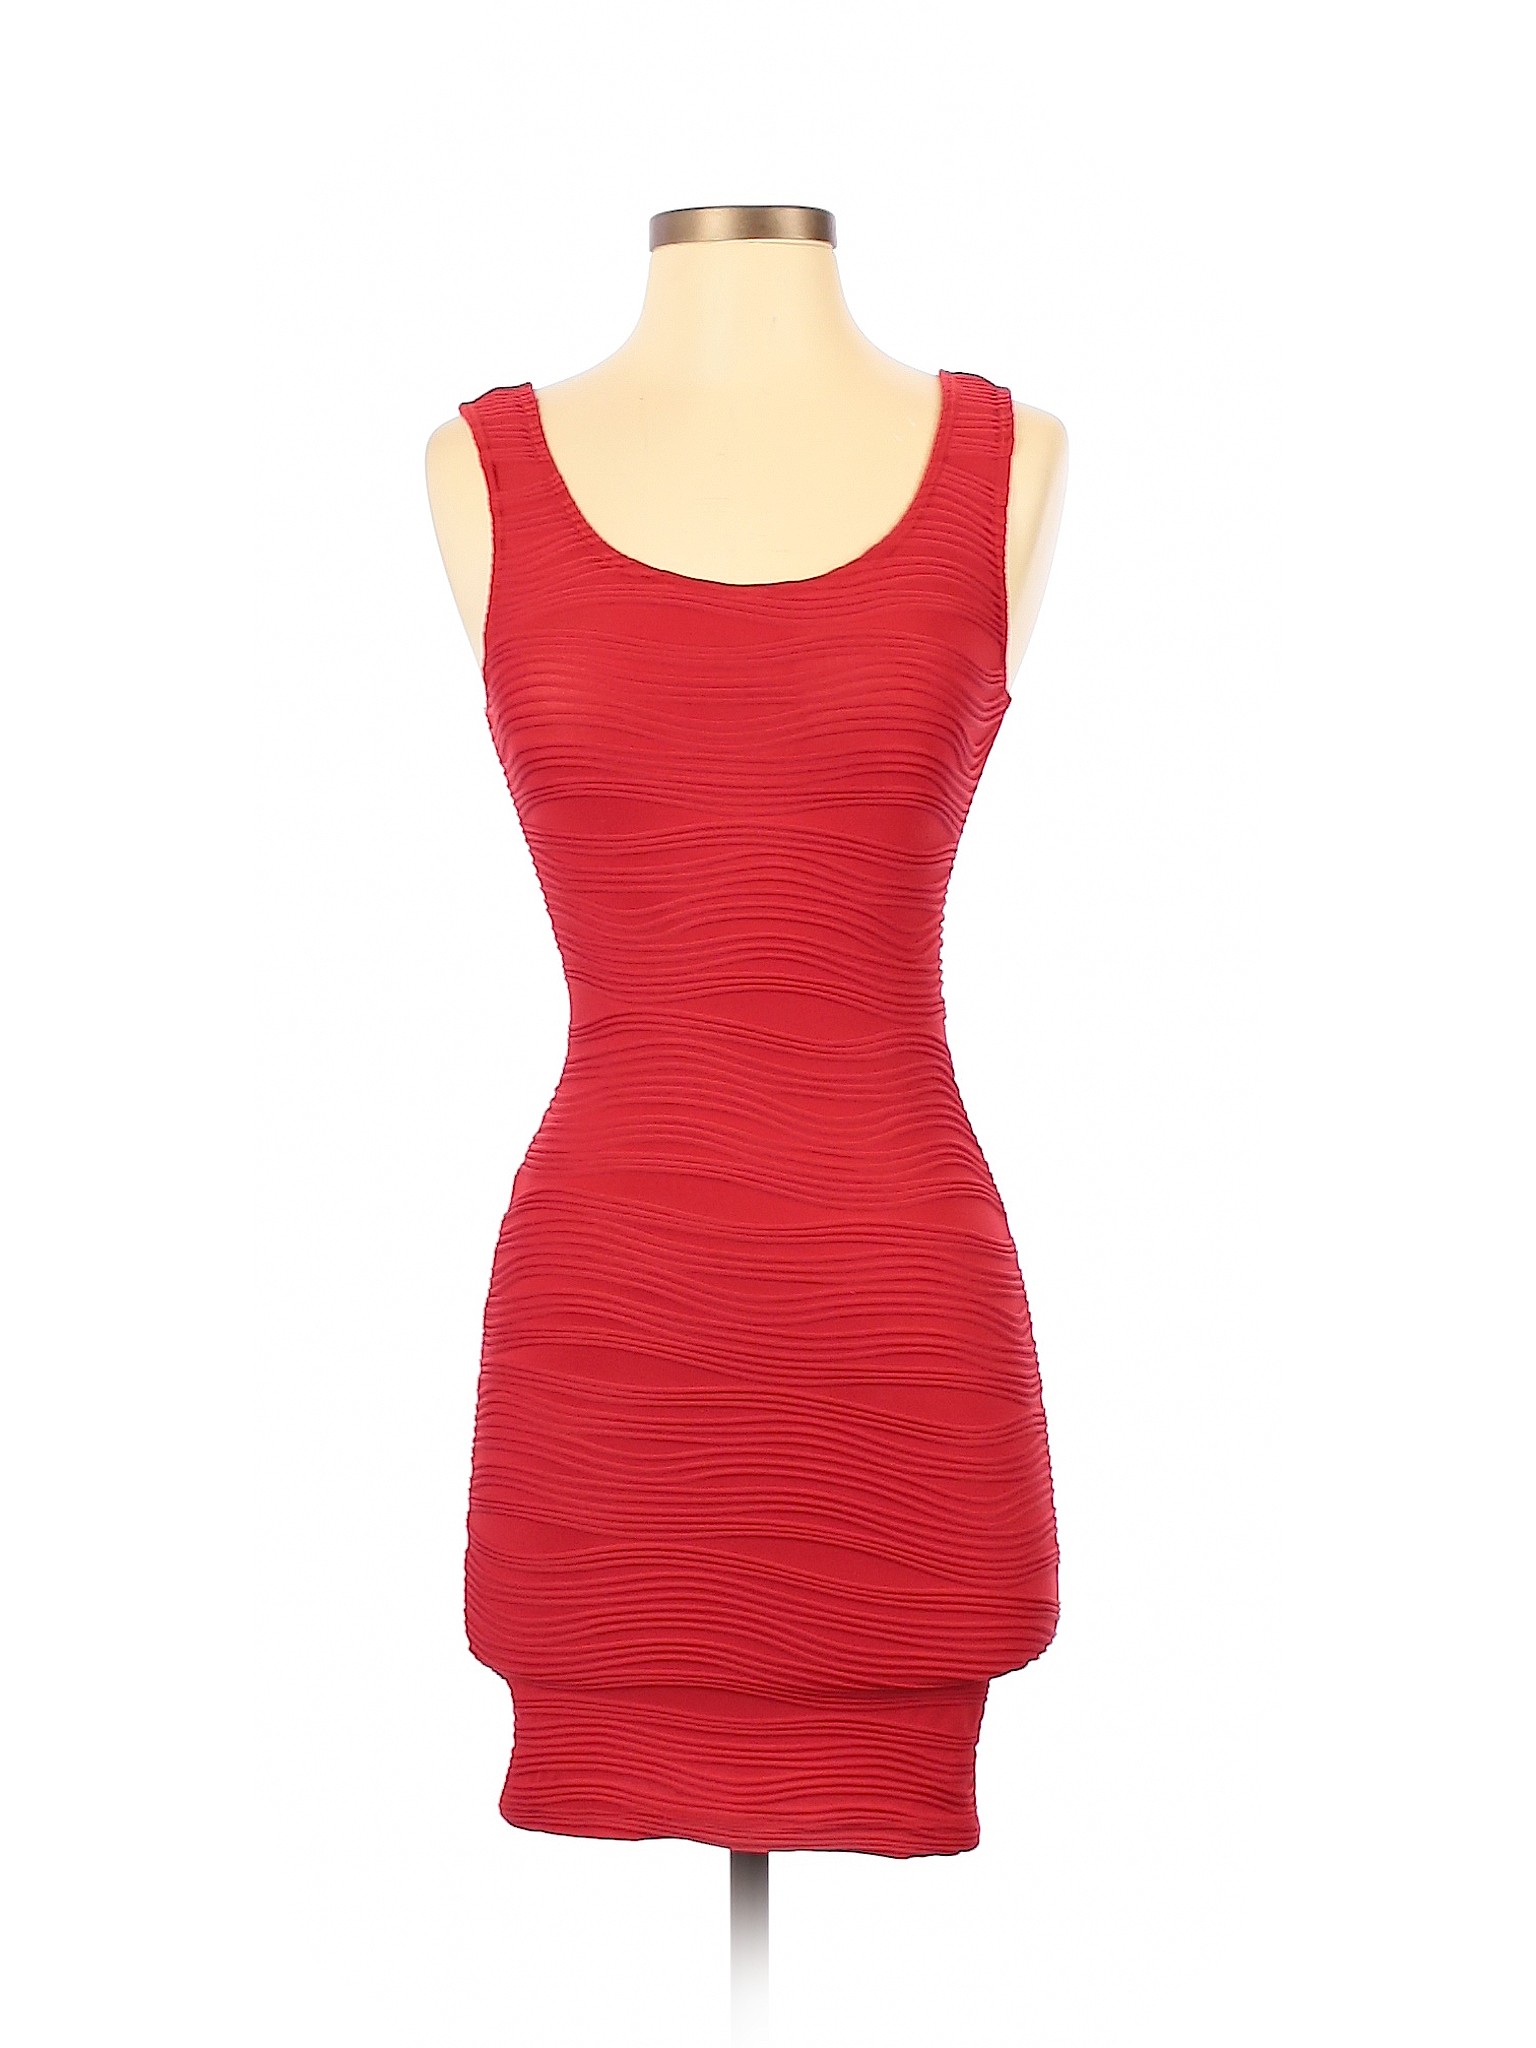 Wet Seal Women Red Casual Dress XS | eBay